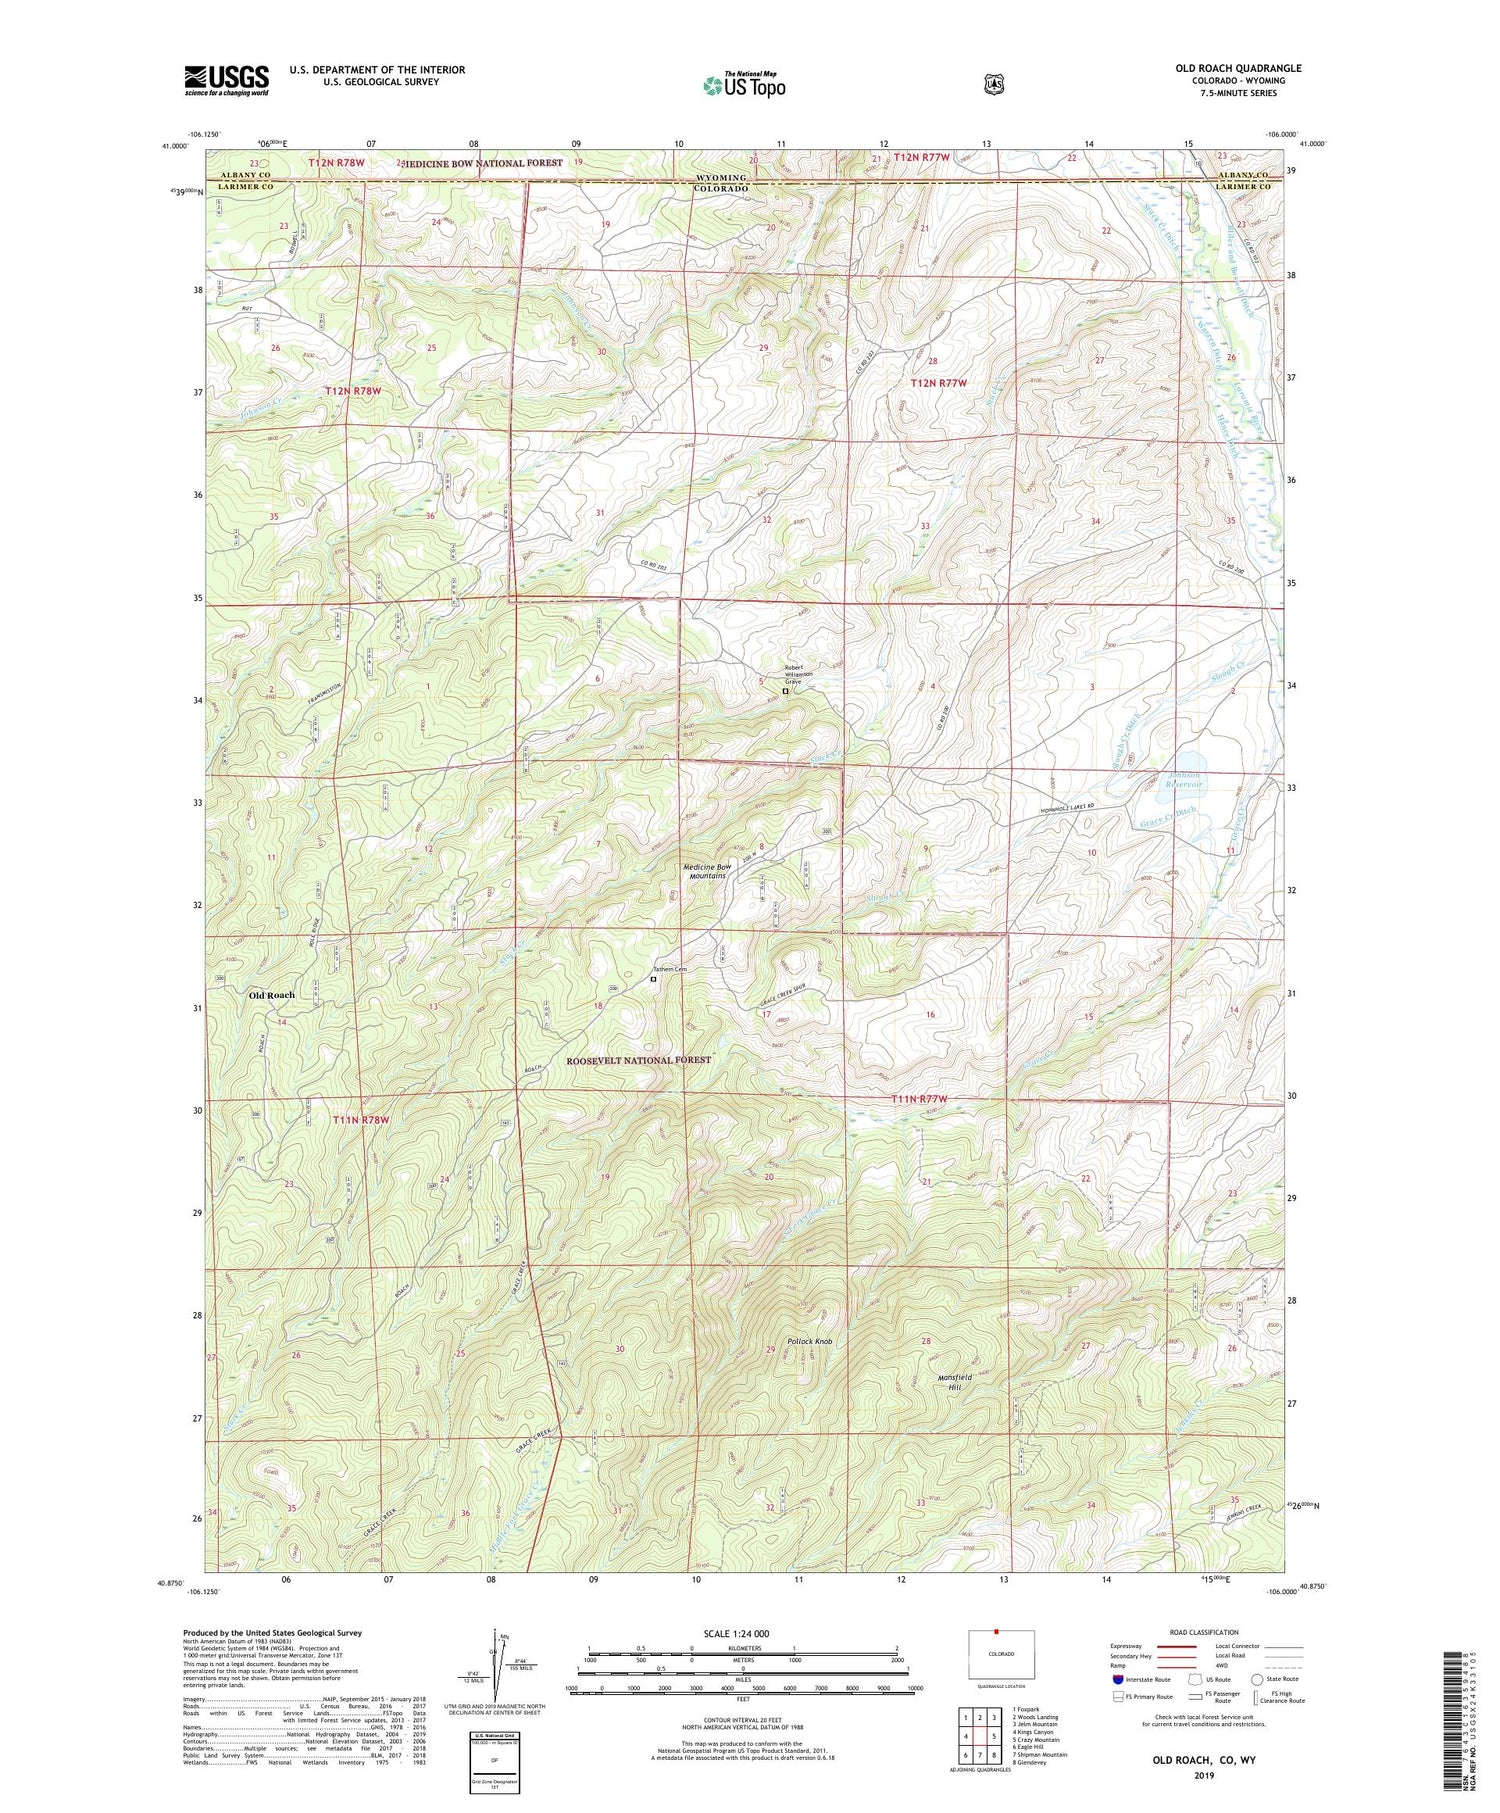 Old Roach Colorado US Topo Map Image